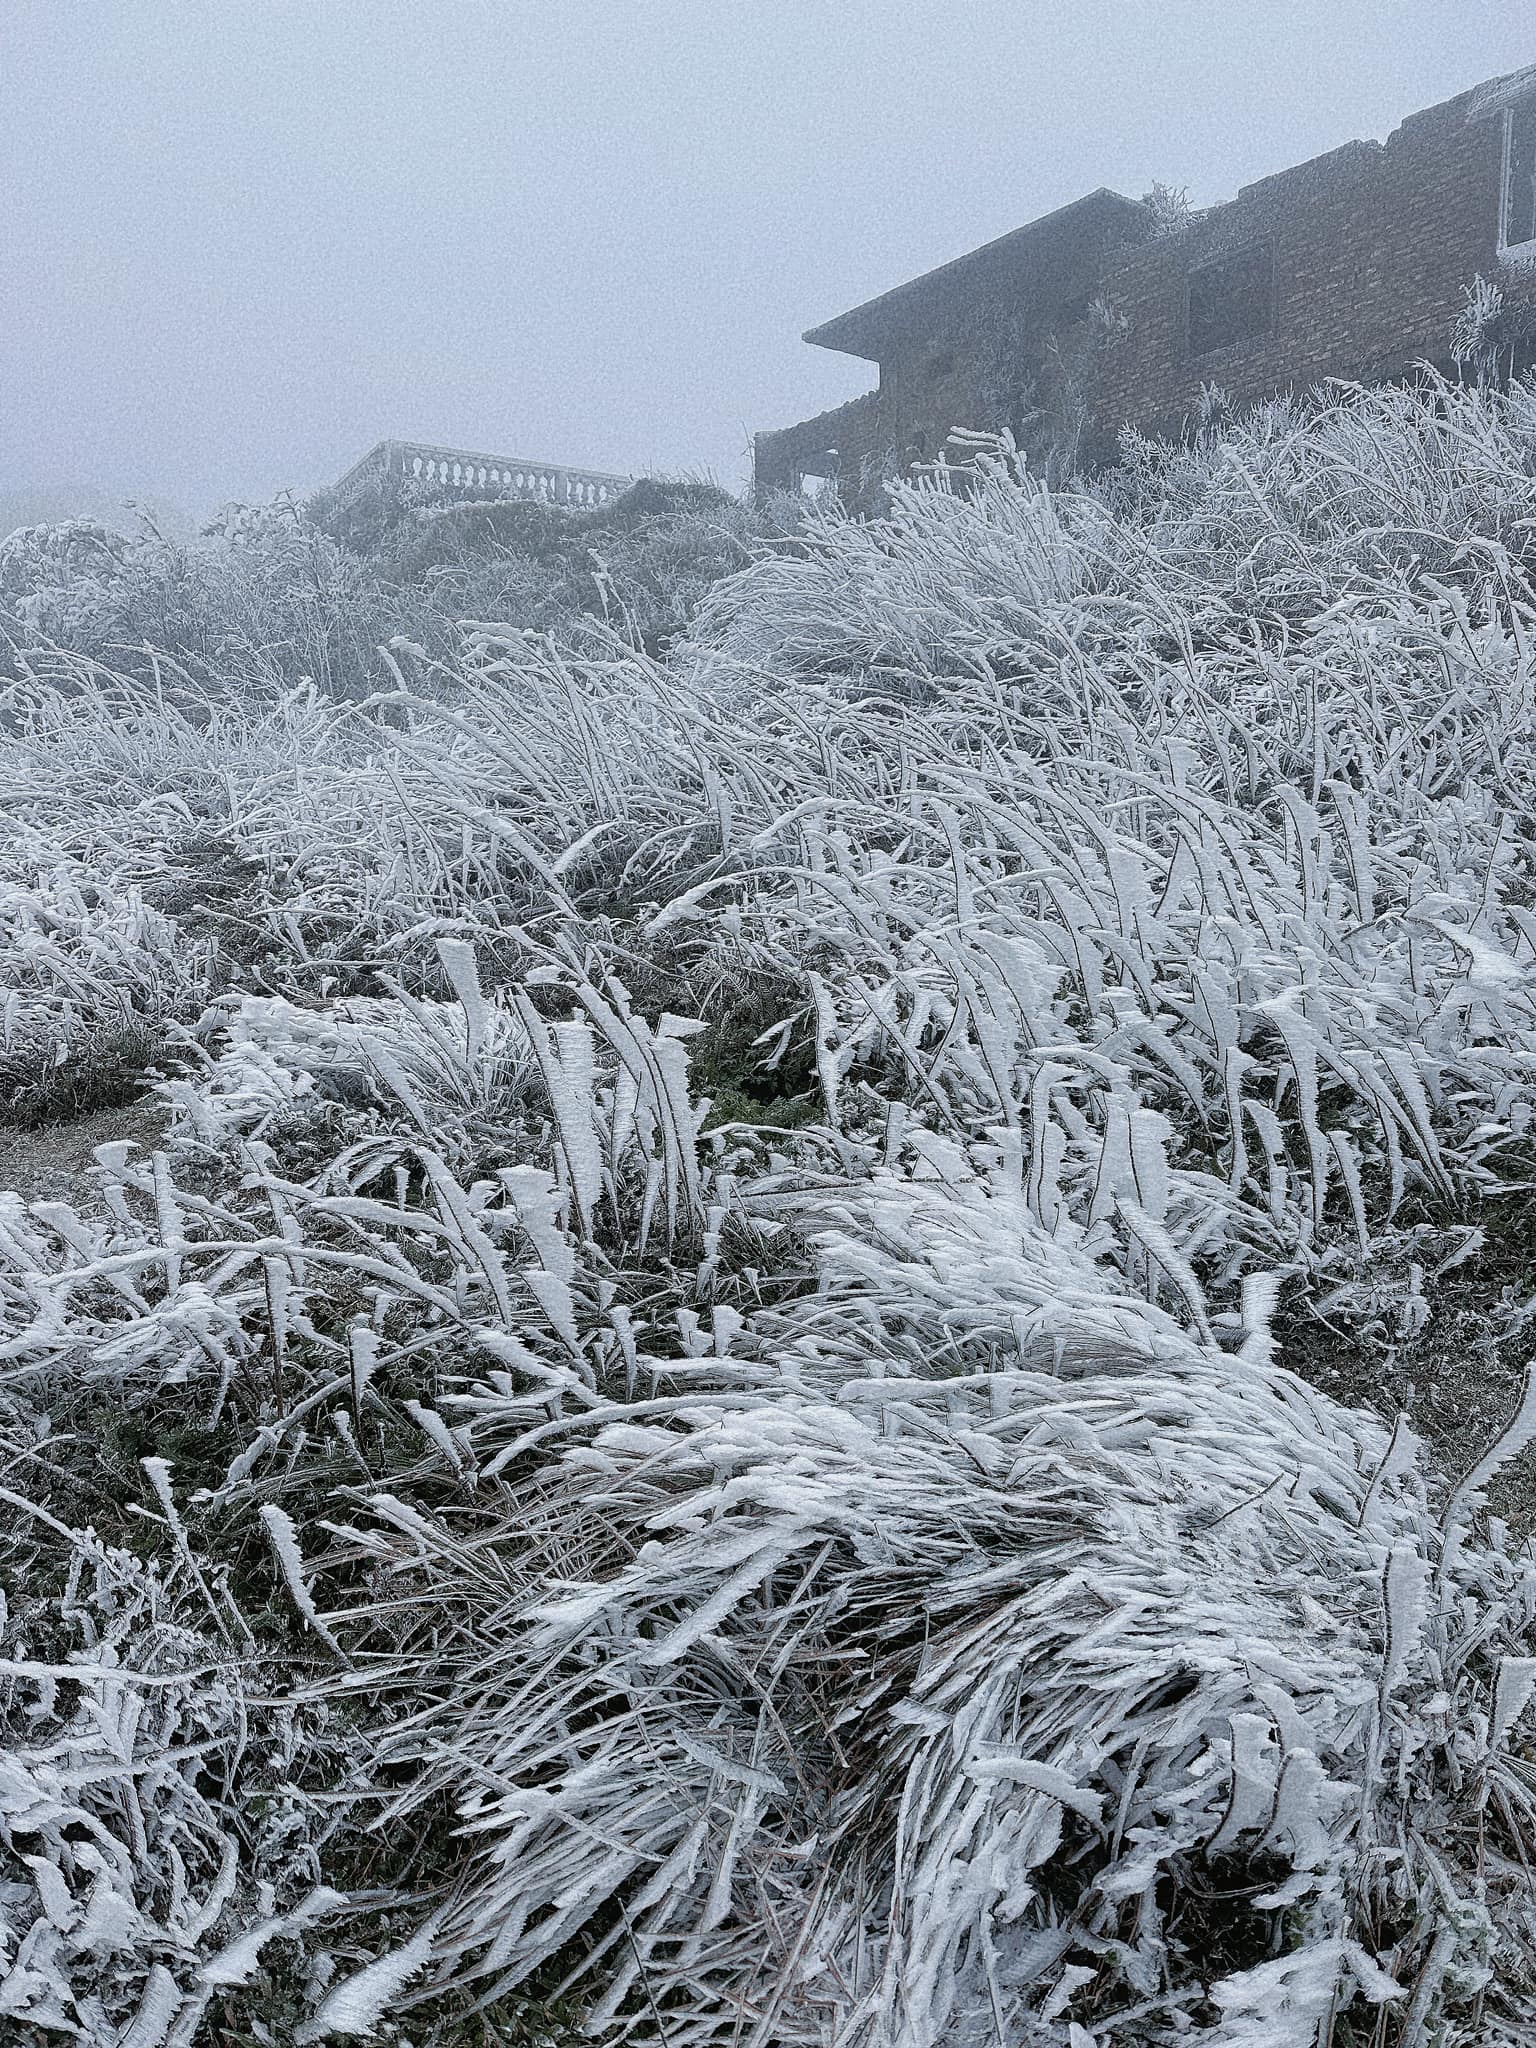 đỉnh Mẫu Sơn đang đóng băng rất dày